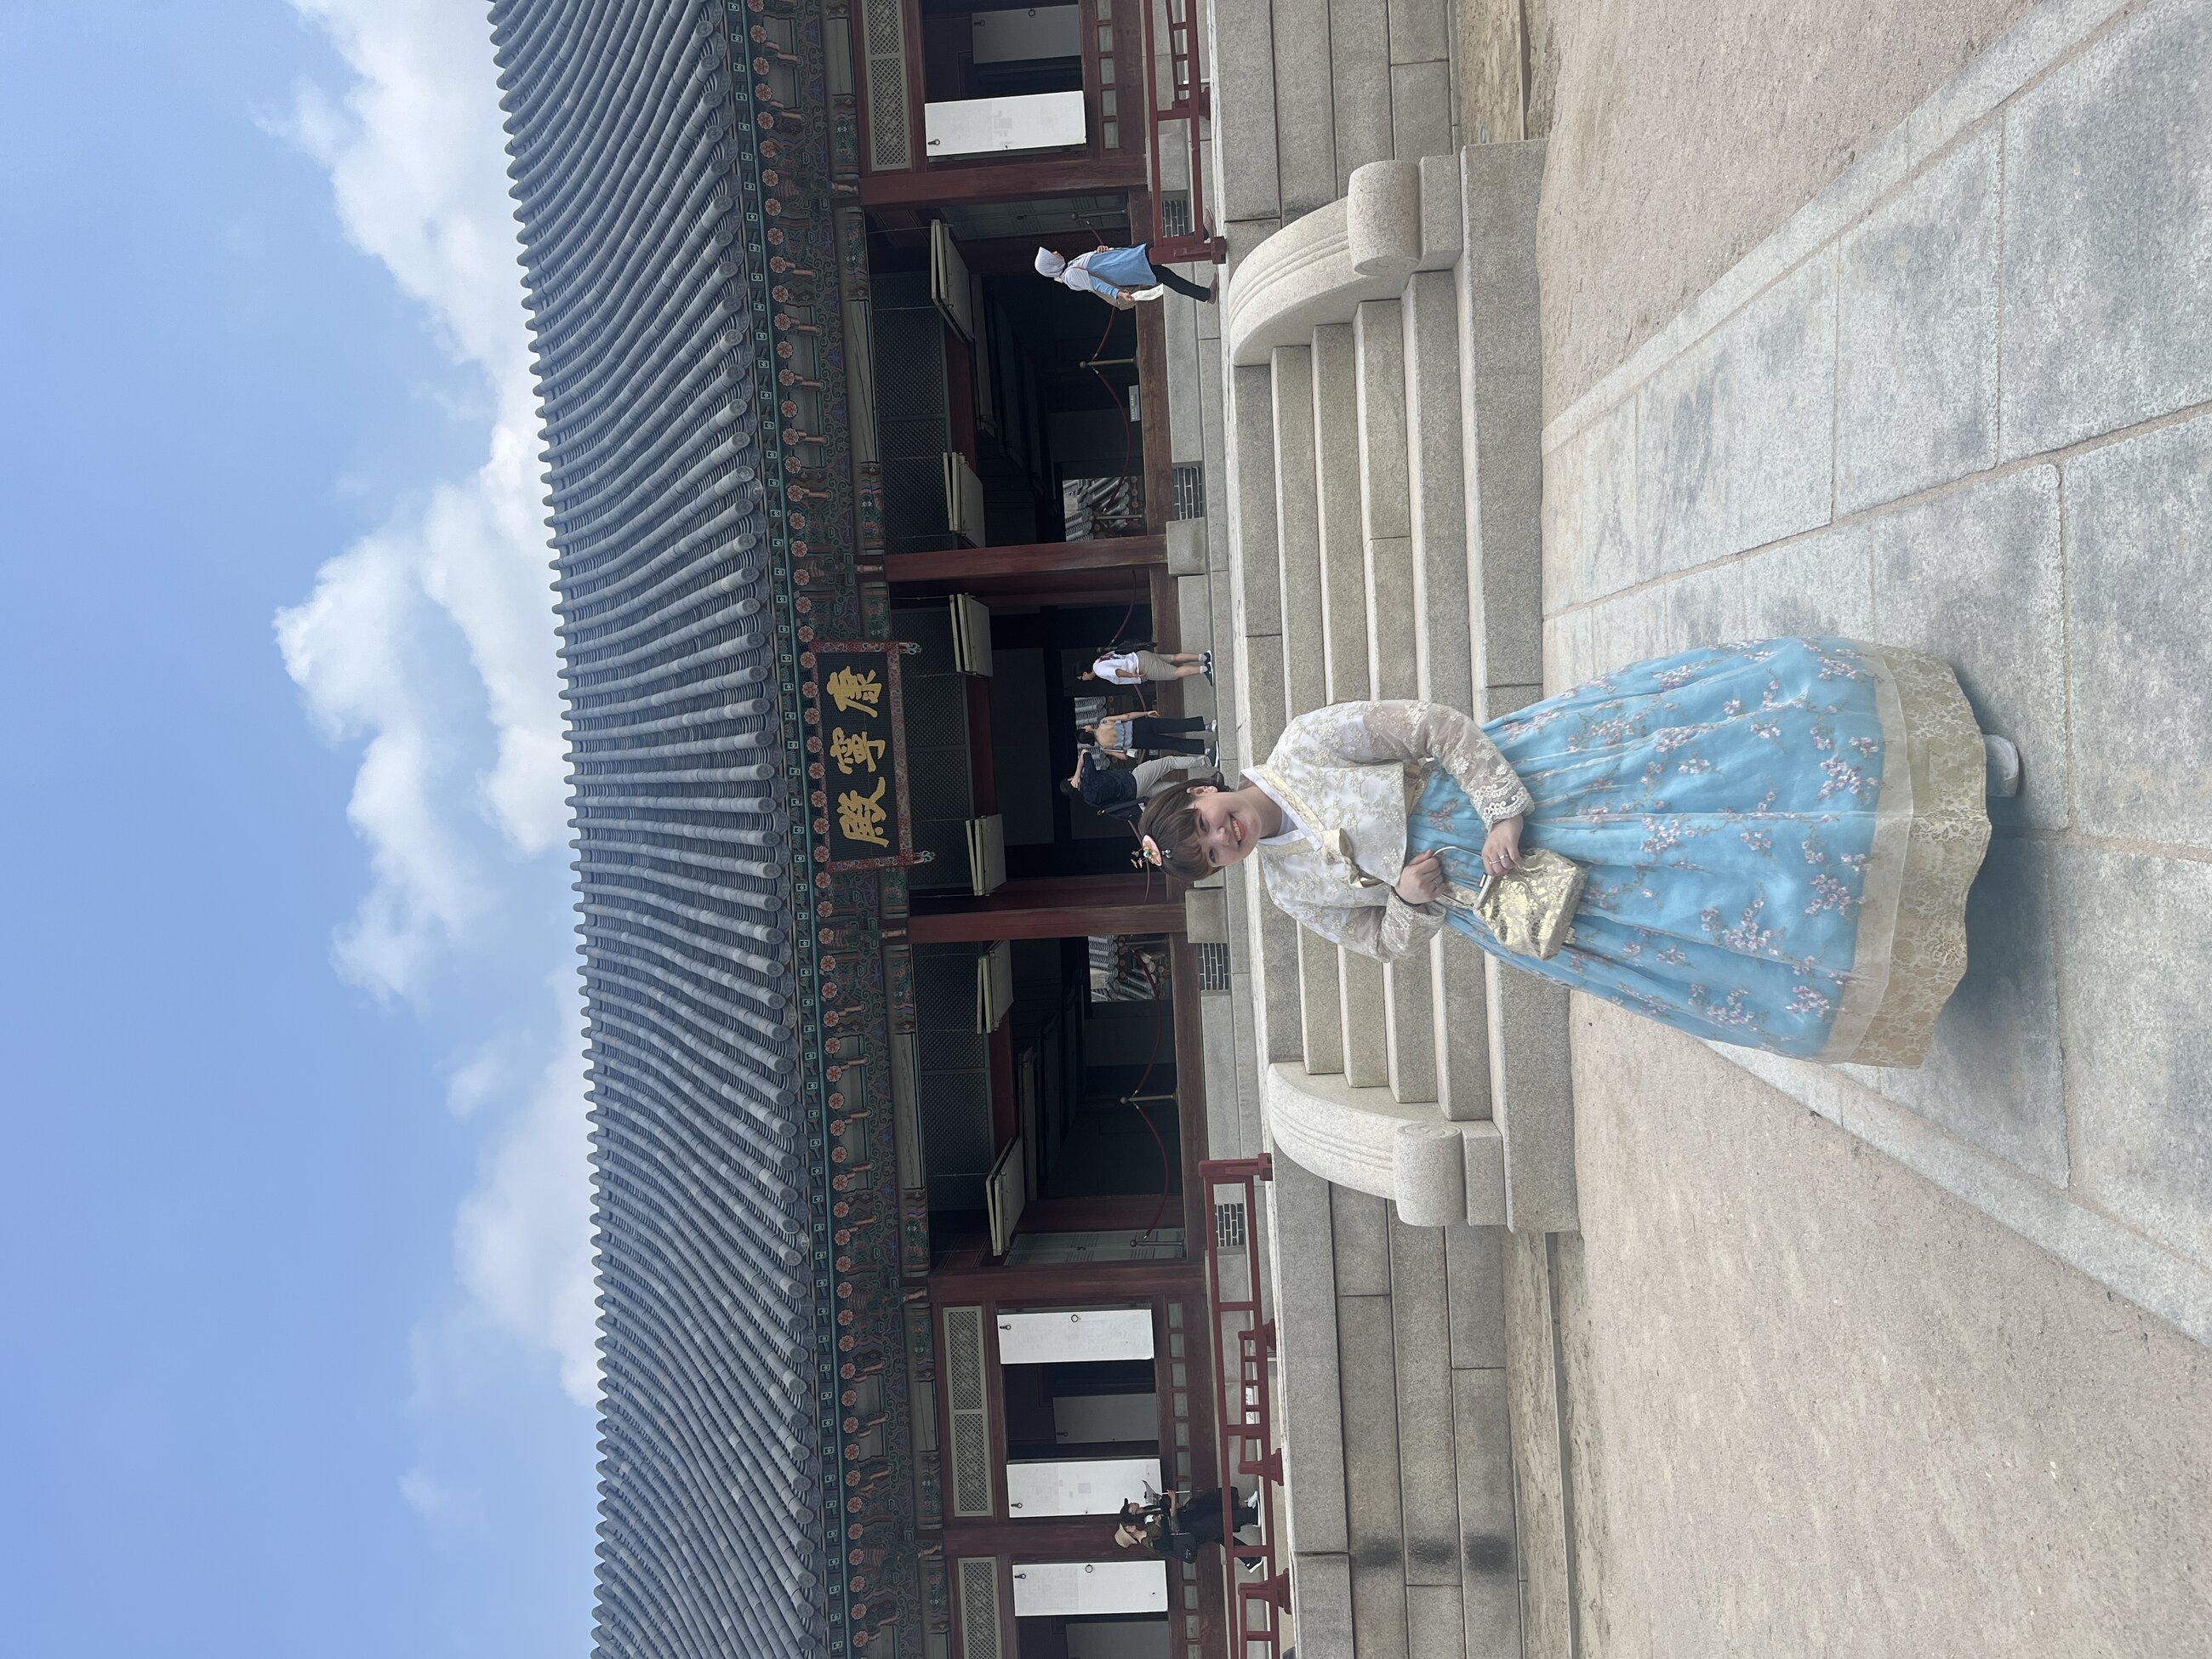 Me at Gyeongbokgung palace :)